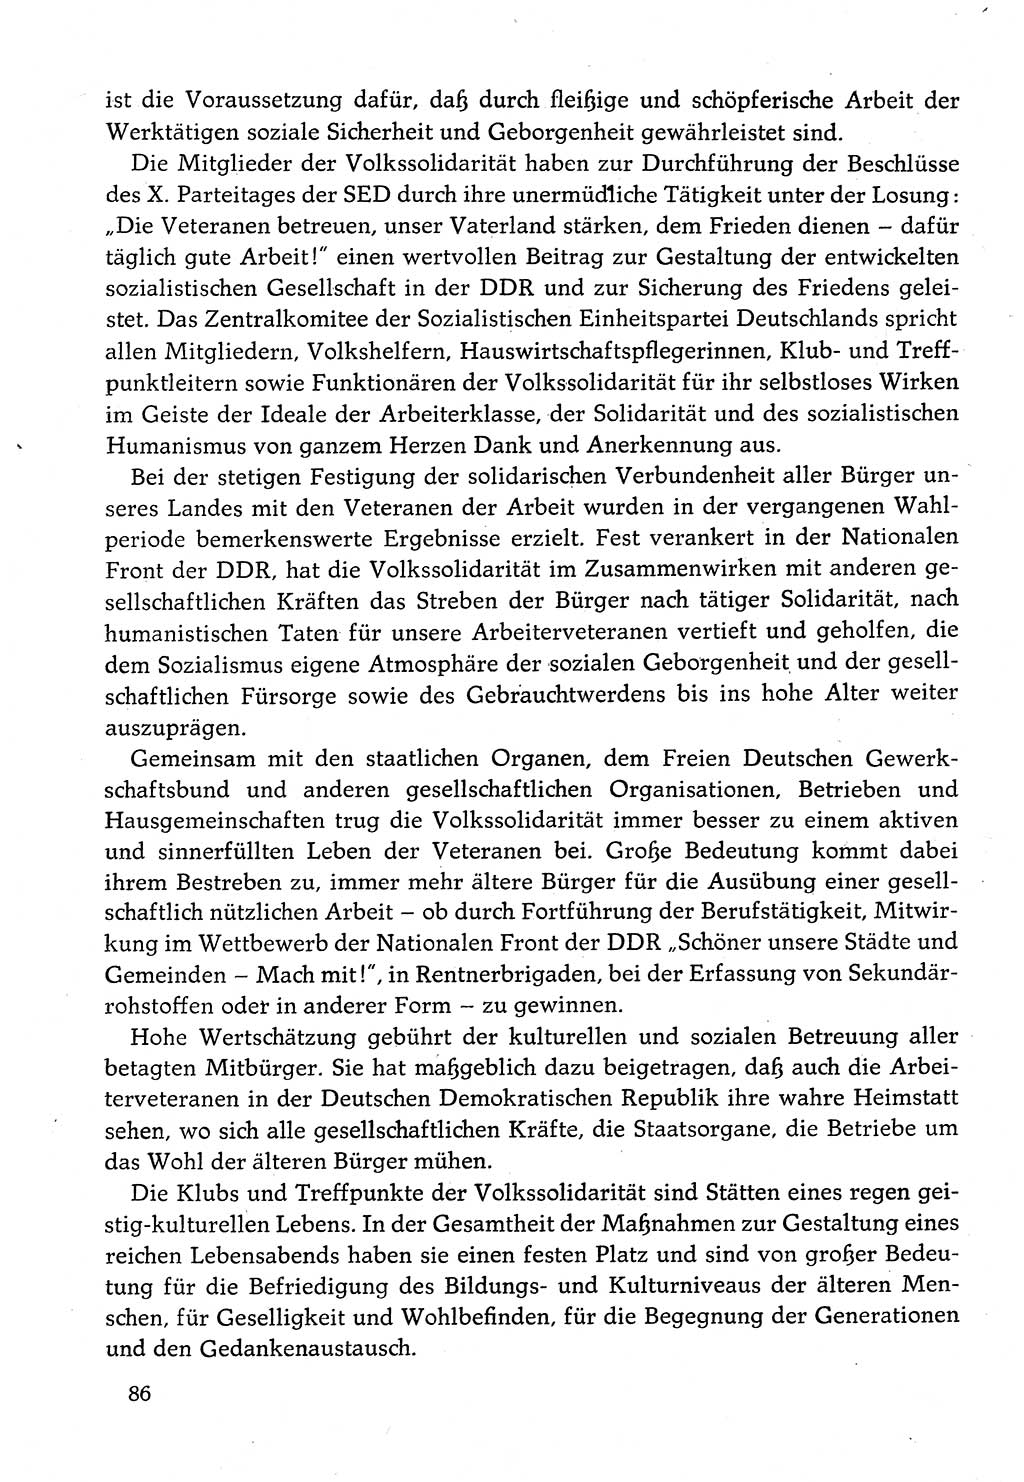 Dokumente der Sozialistischen Einheitspartei Deutschlands (SED) [Deutsche Demokratische Republik (DDR)] 1982-1983, Seite 86 (Dok. SED DDR 1982-1983, S. 86)